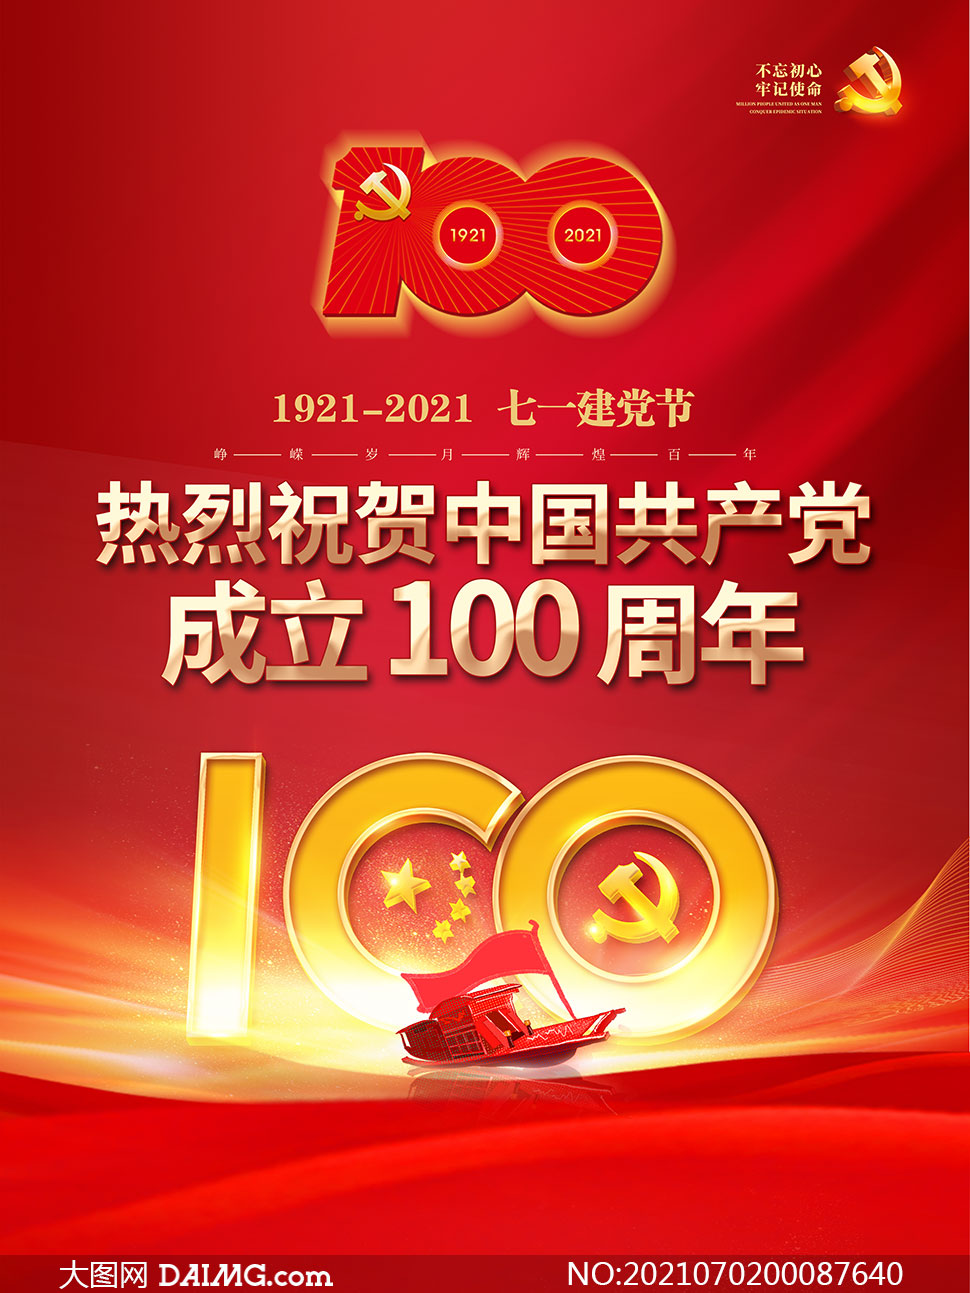 红色大气庆祝建党100周年海报psd素材